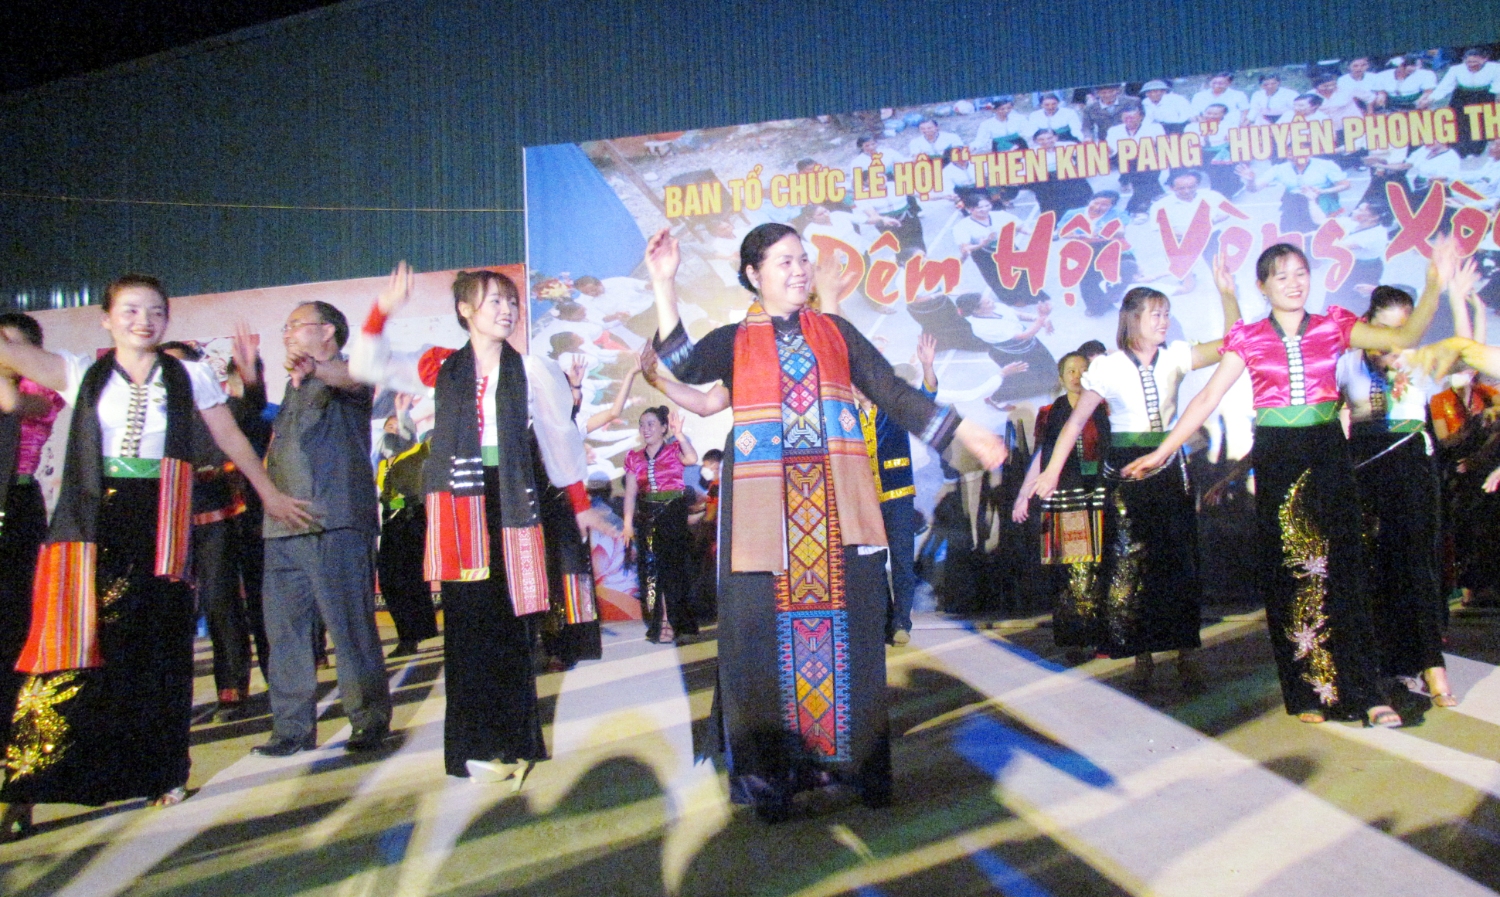 Đồng chí Giàng Páo Mỷ - Ủy viên Trung ương Đảng, Bí thư Tỉnh ủy tham dự Đêm hội vòng xòe tại Lễ hội Then Kin Pang huyện Phong Thổ năm 2022